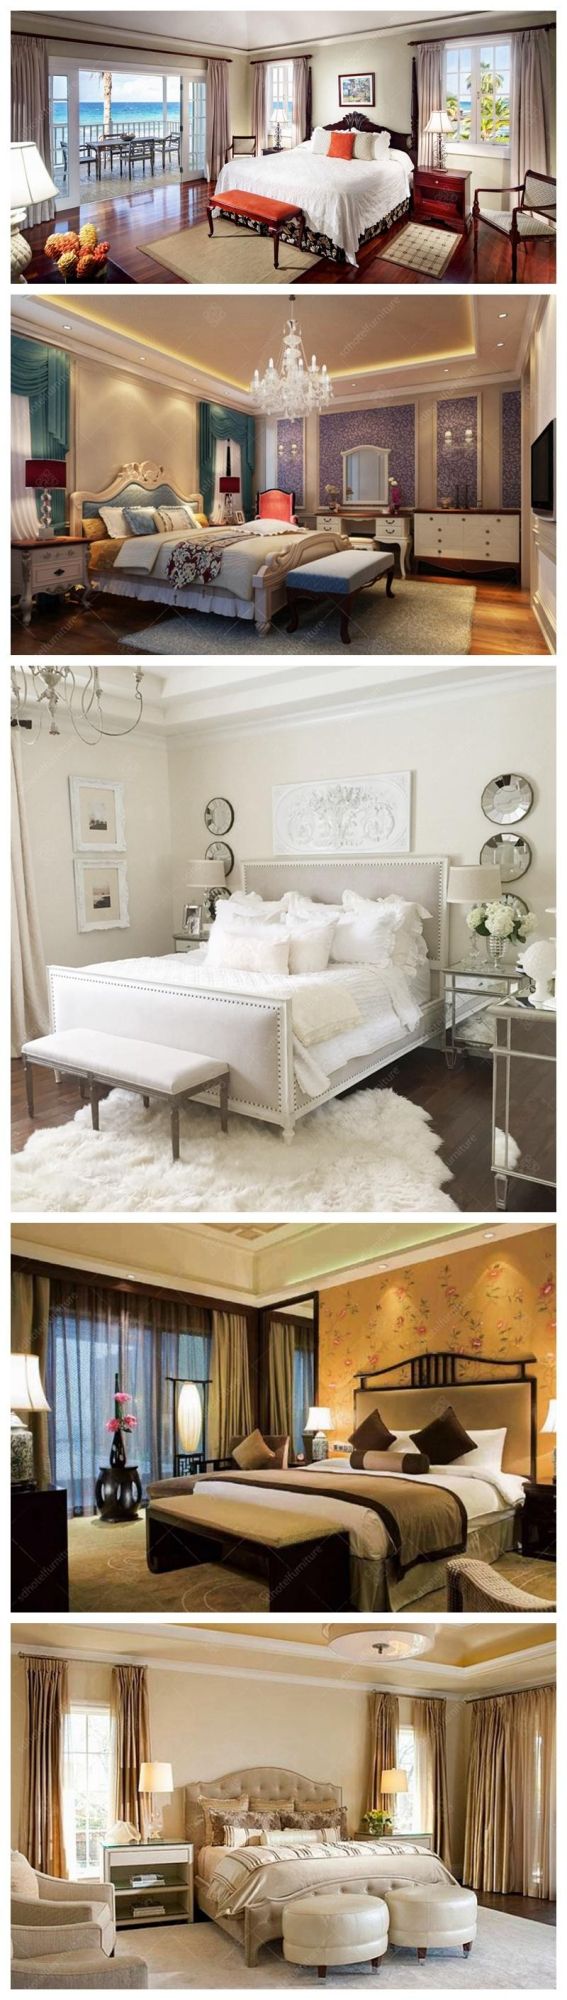 Artistical King Size Hotel Bedroom Furniture for 5 Stars Resort Hotel